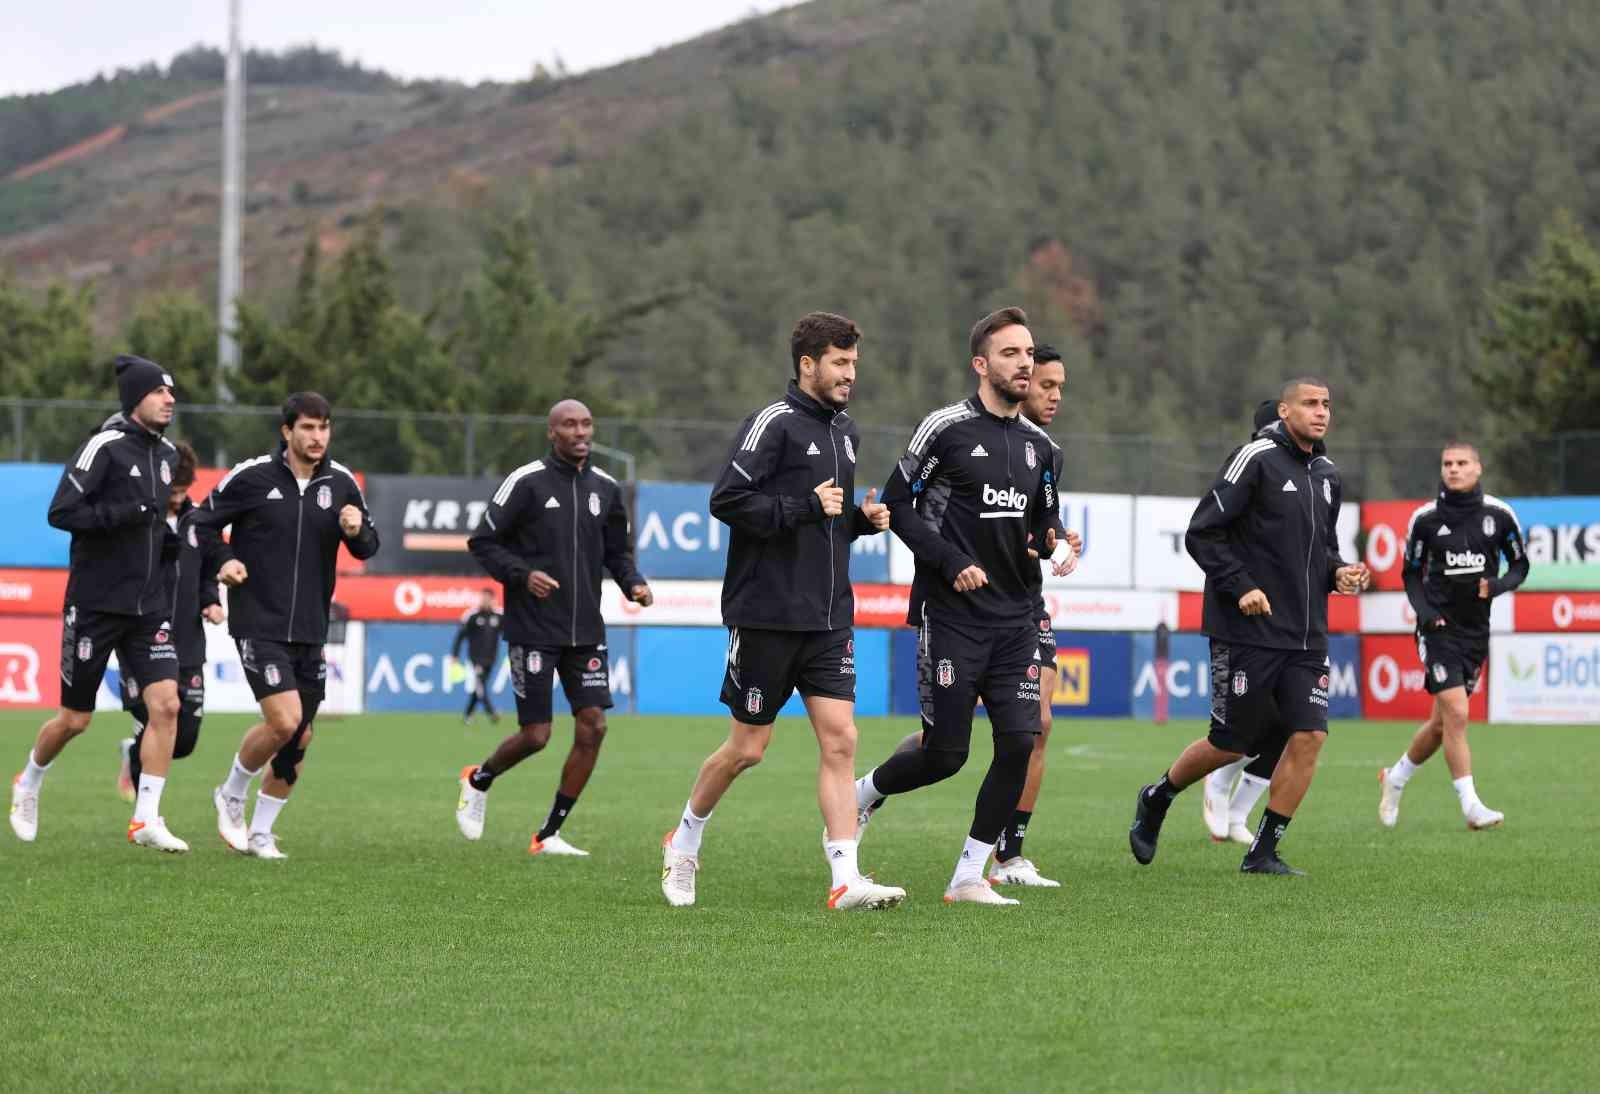 Beşiktaş, GZT Giresunspor maçı hazırlıklarına başladı #istanbul